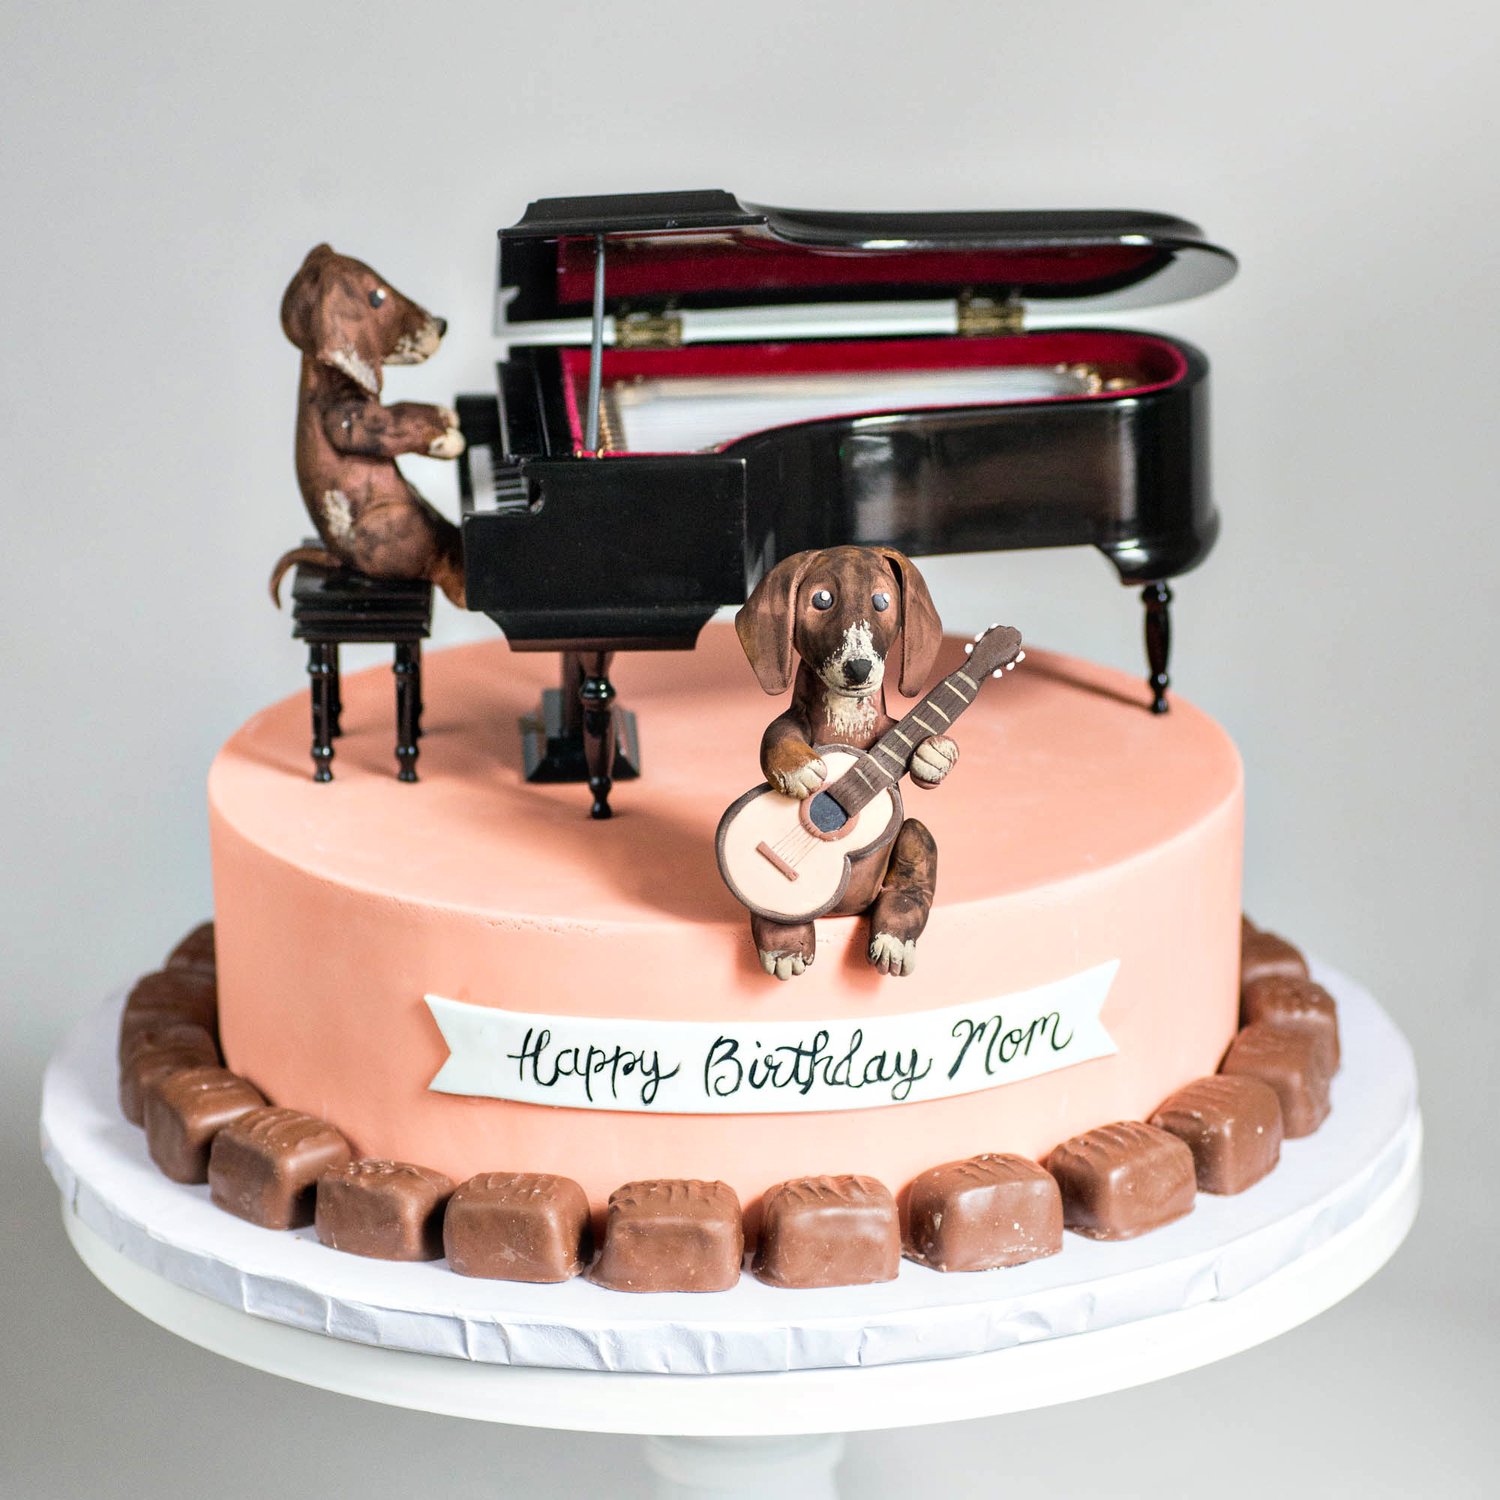 Musical dachshund birthday cake